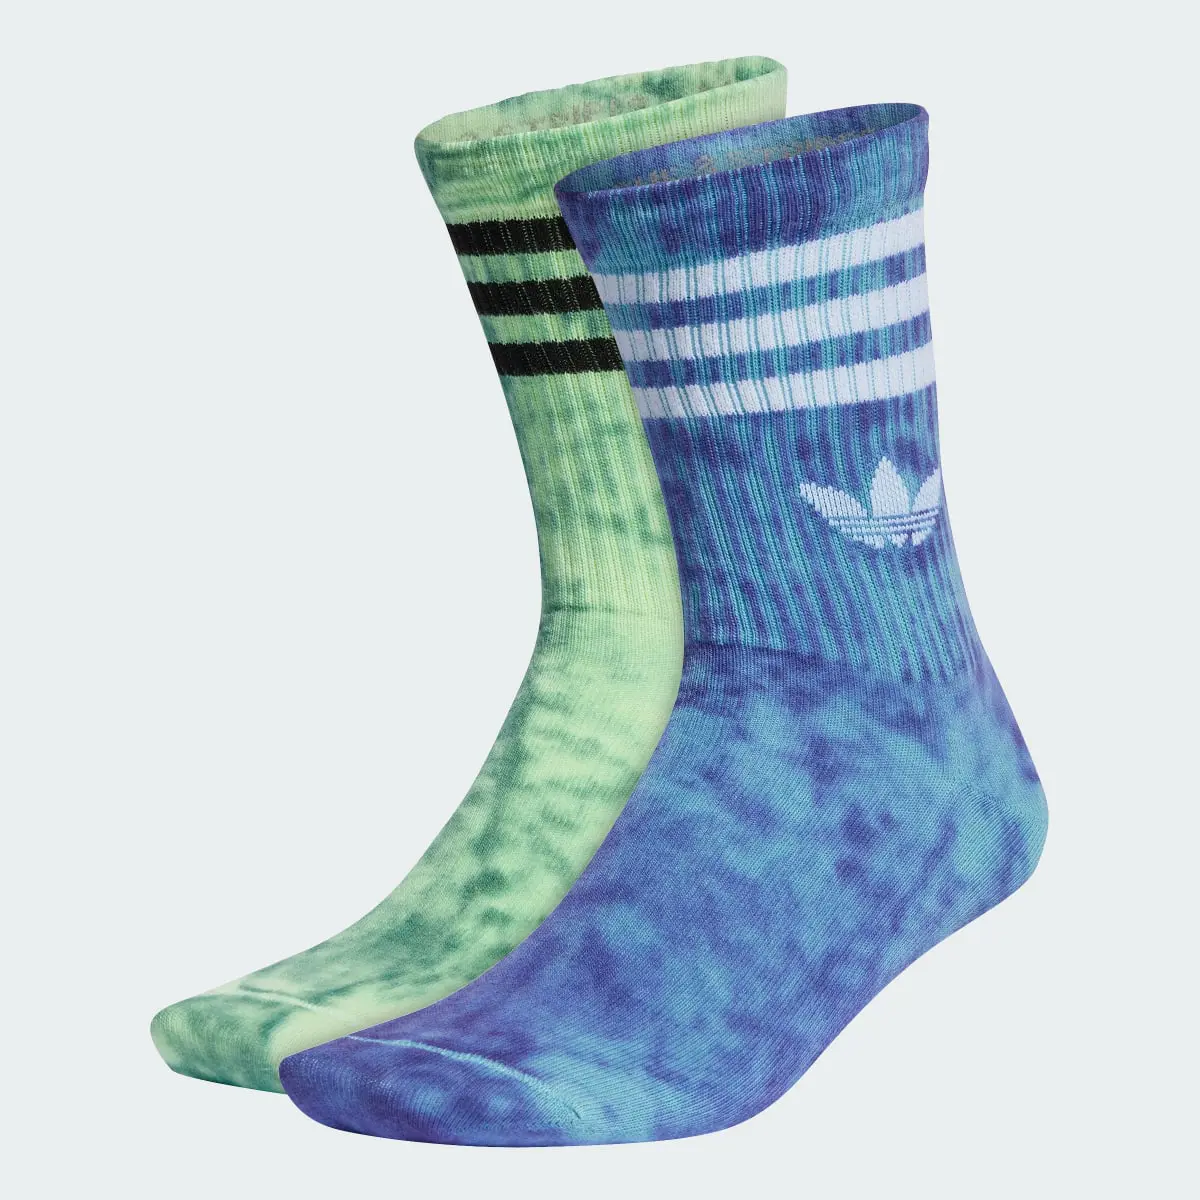 Adidas Tie Dye Socken, 2 Paar. 2